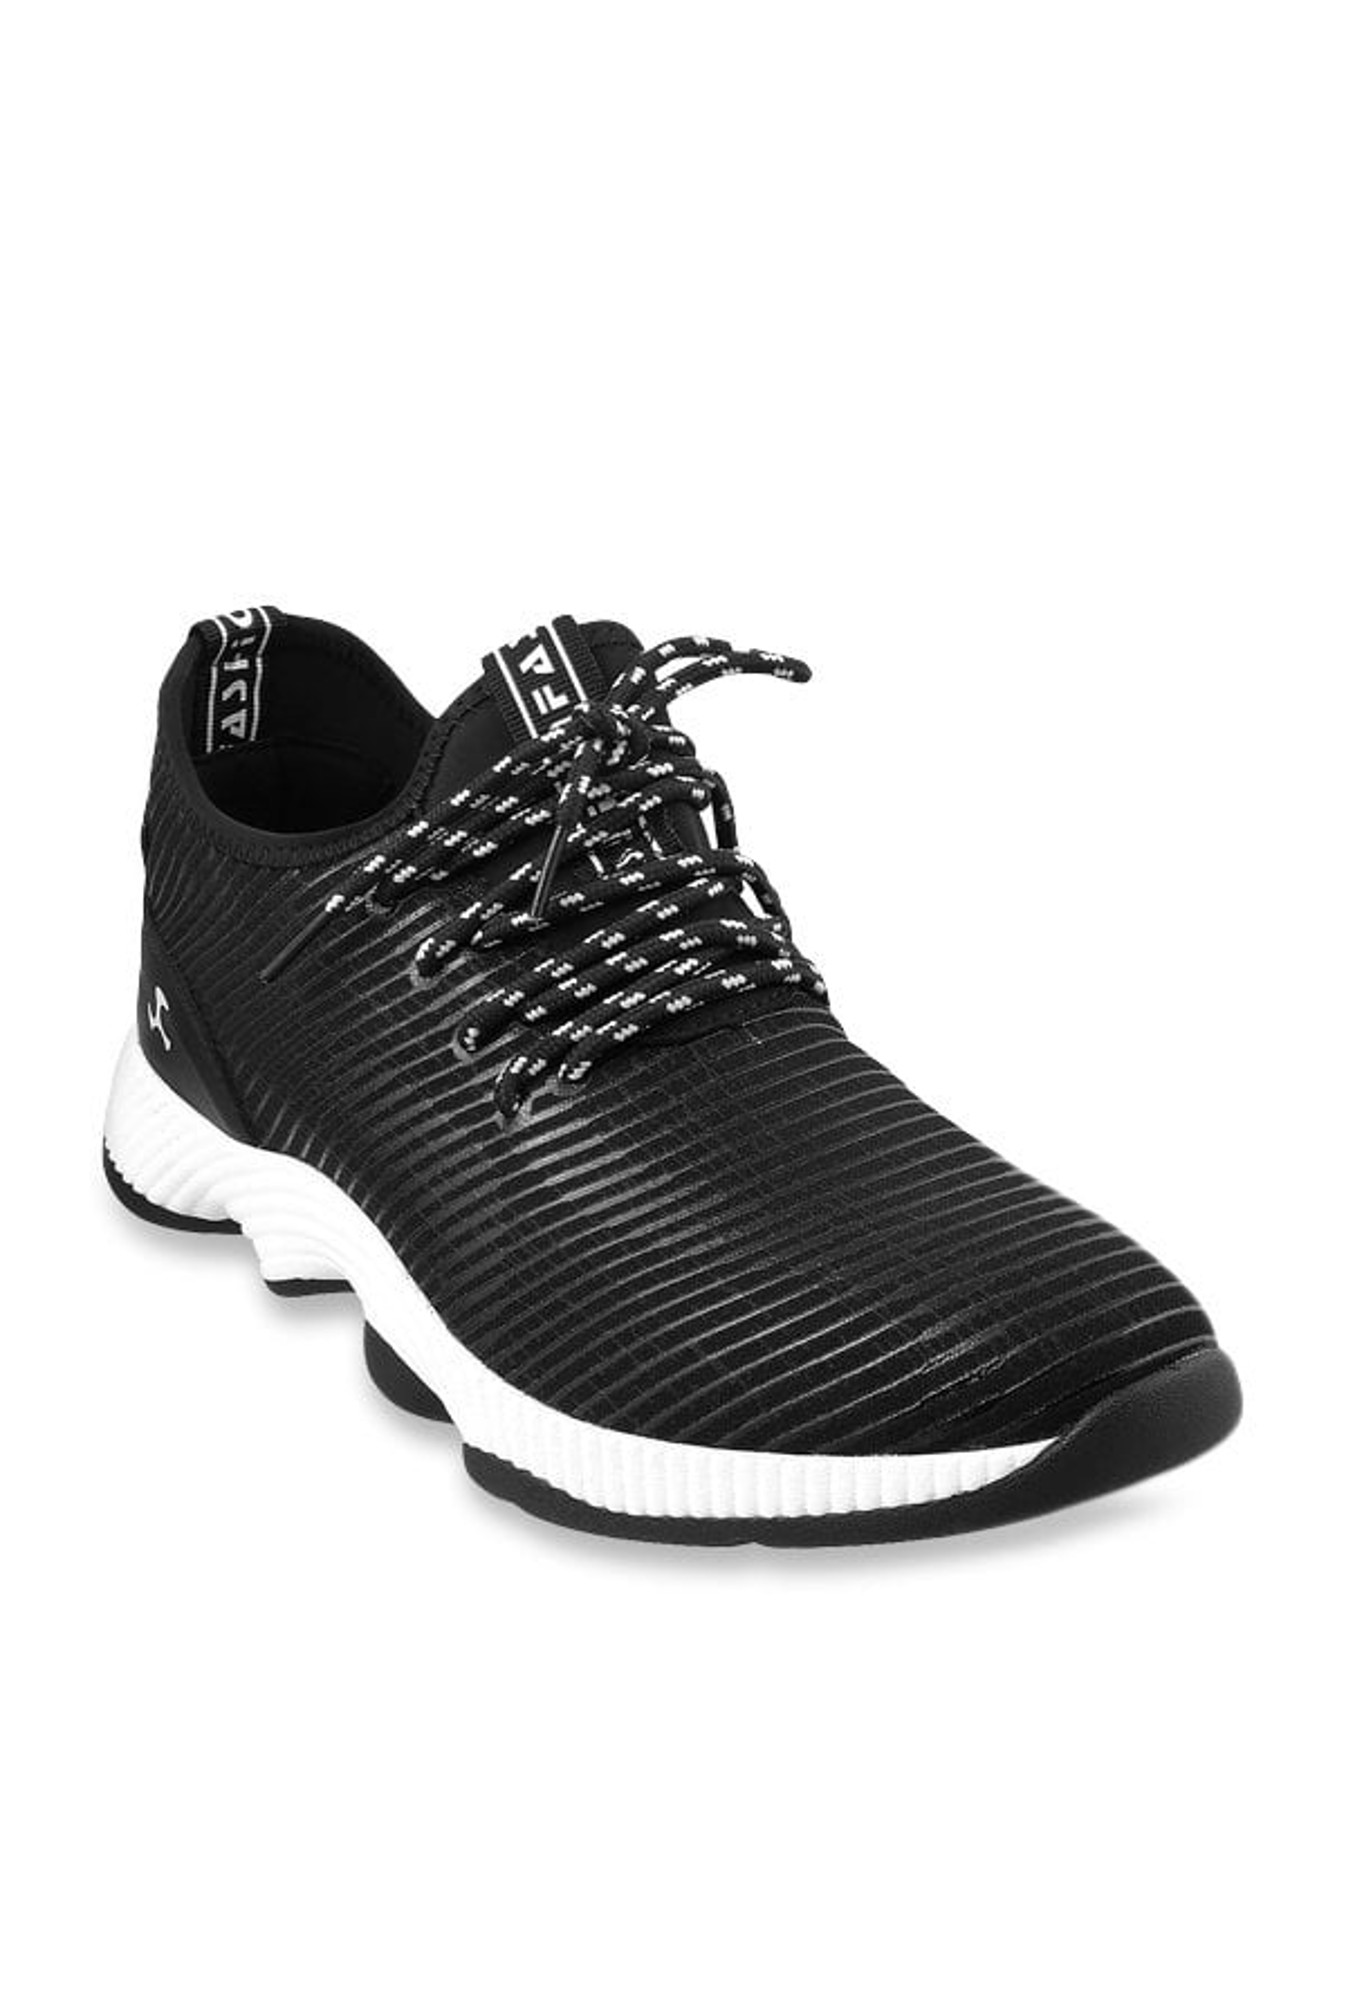 Buy Mochi Black Running Shoes for Men 